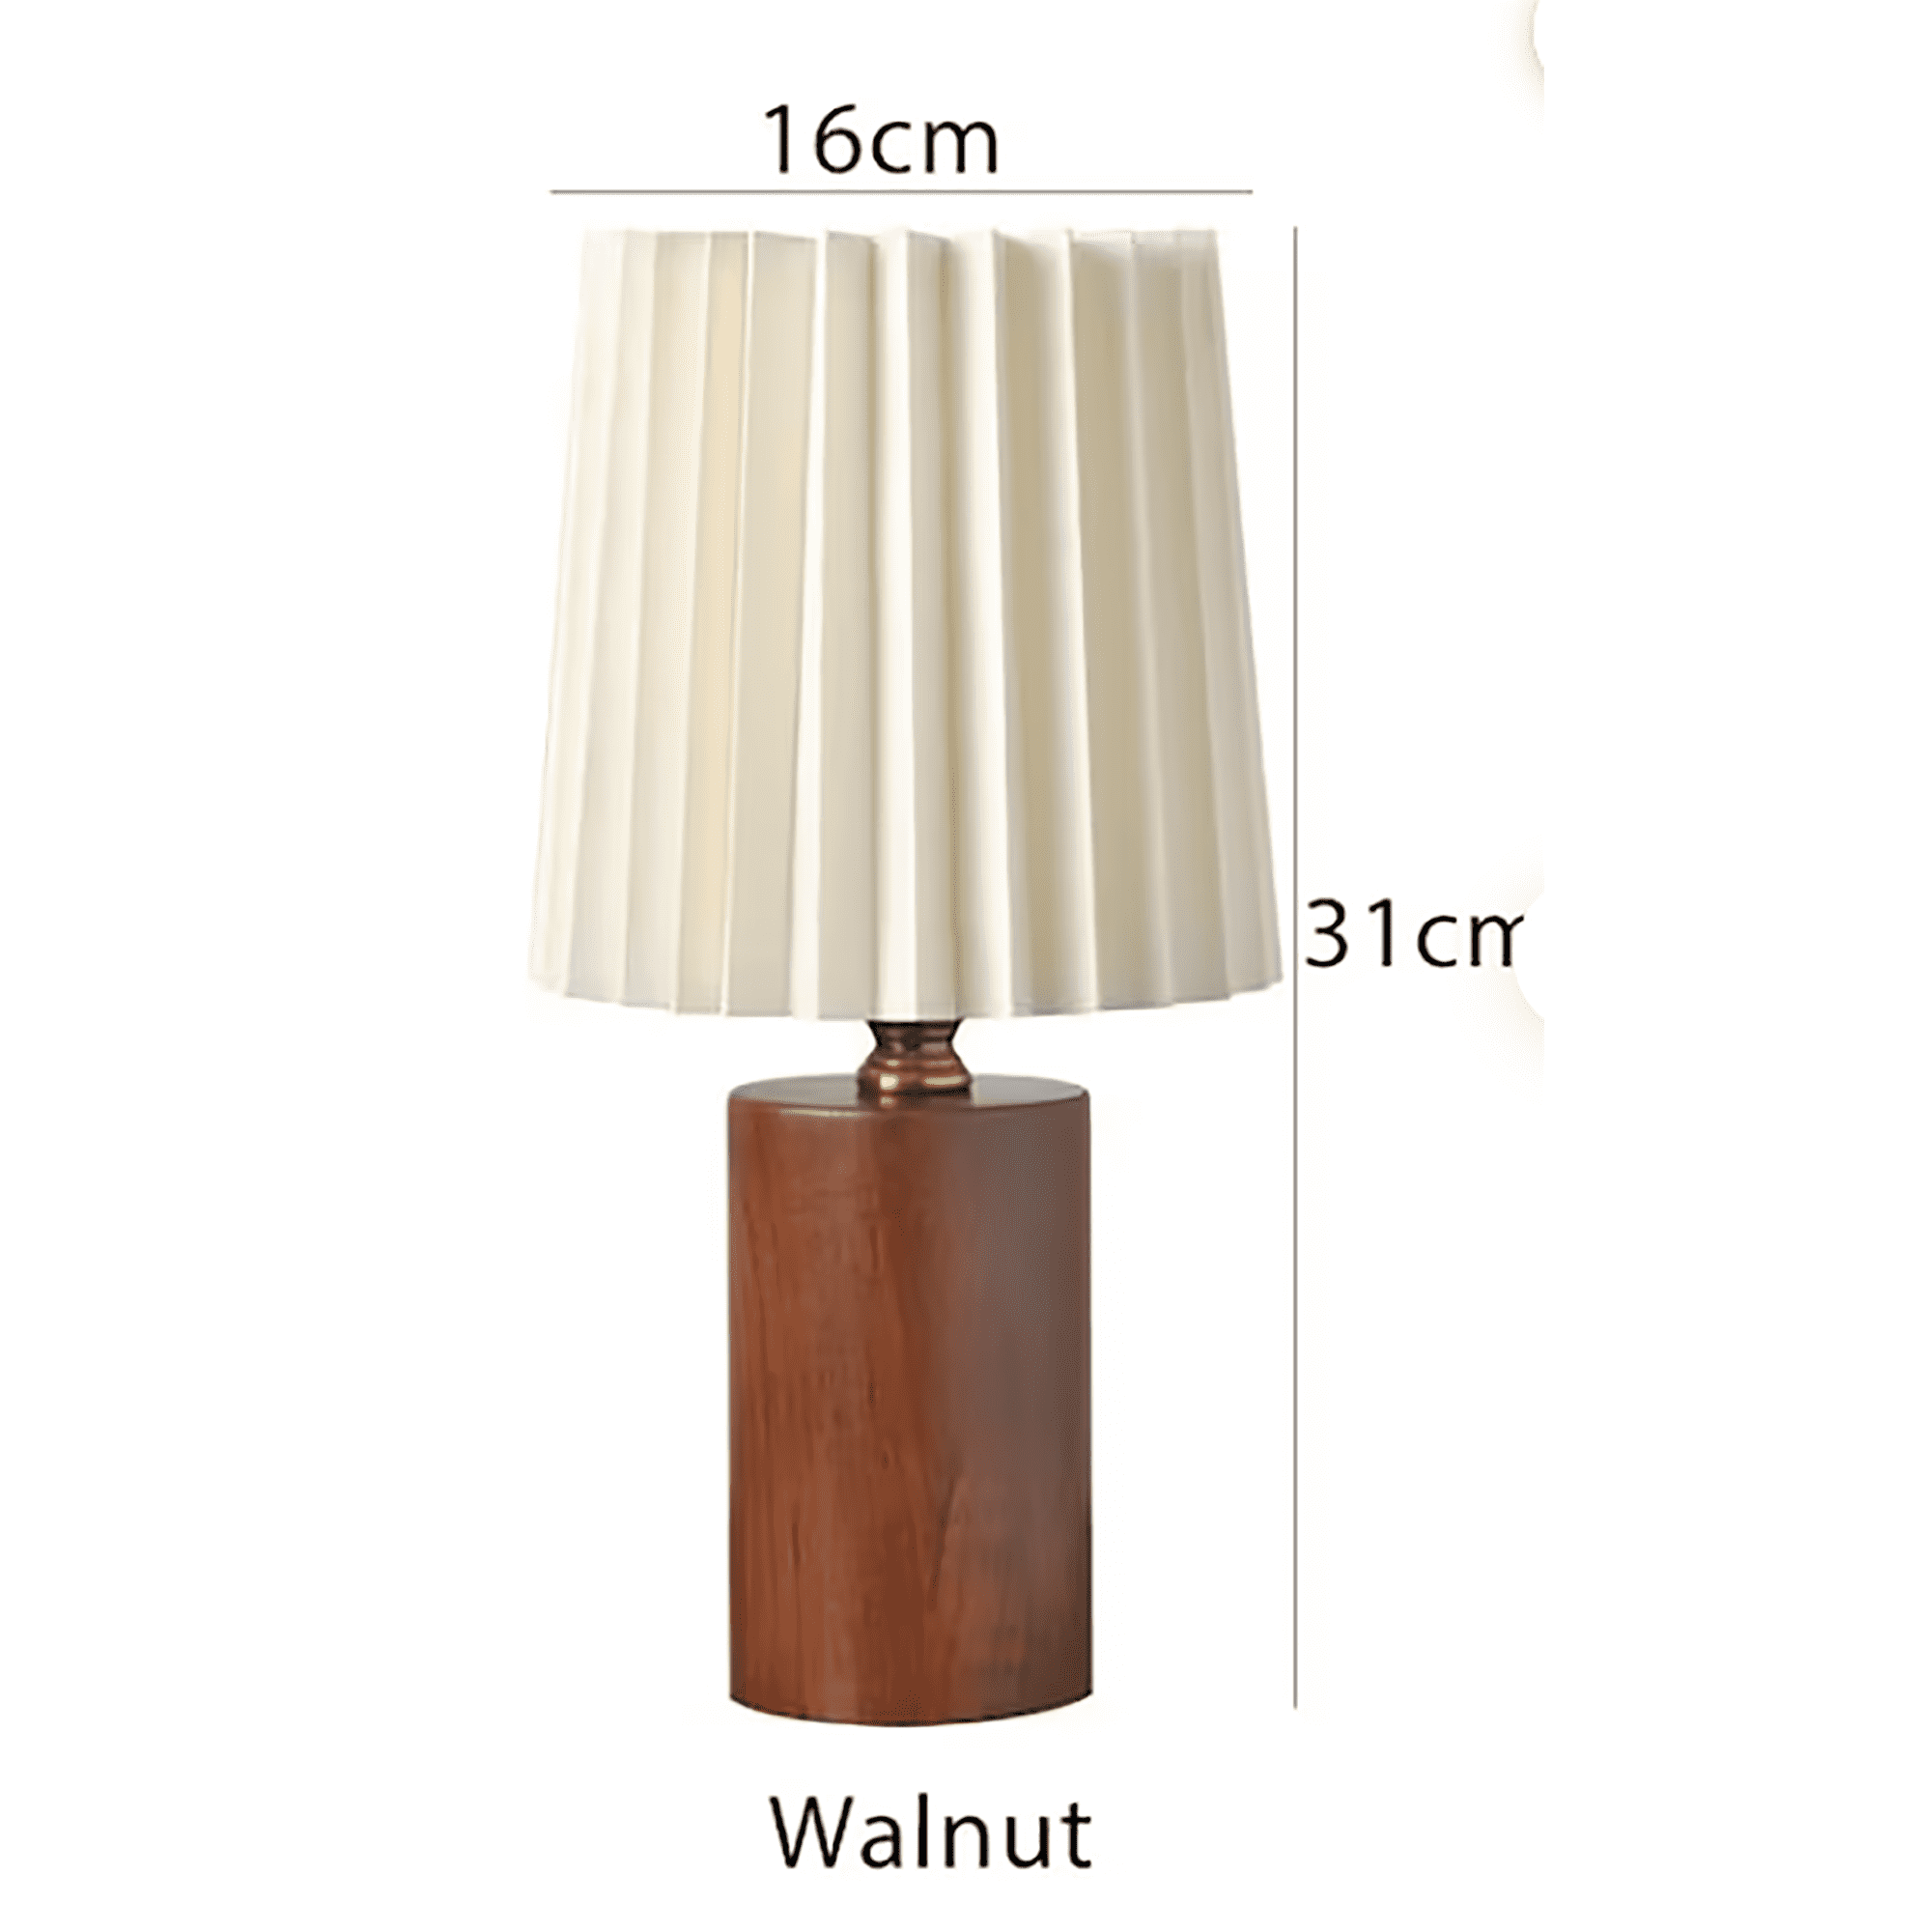 Scandinavia Pleated Wooden Table Lamp | Rustic Bedside Lamp | Vintage Desk Lamp | Nordic Solid Wood Night Light | Minimalist Mushroom Reading Lamp